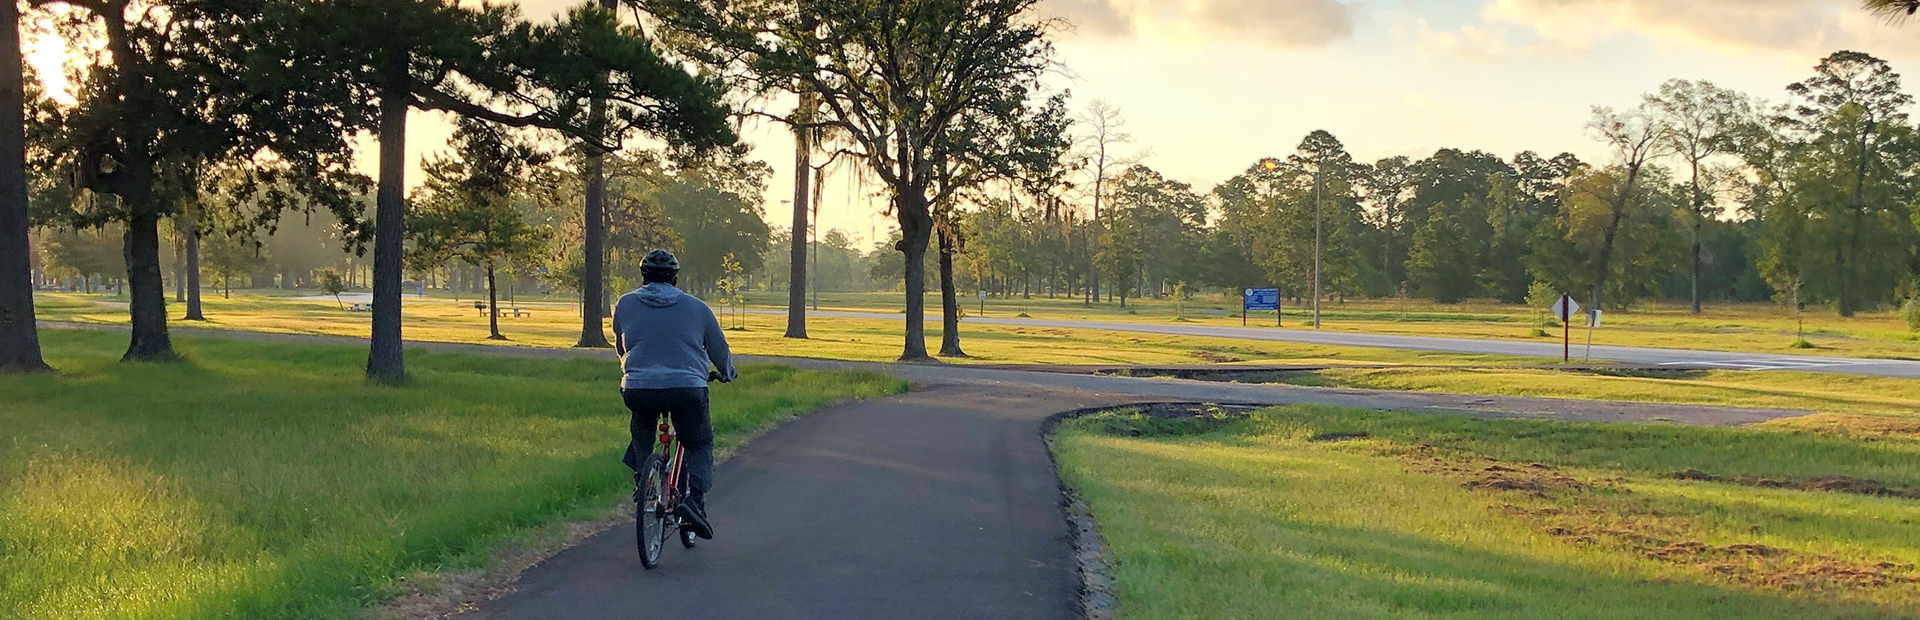 Deussen Park trail with bike rider